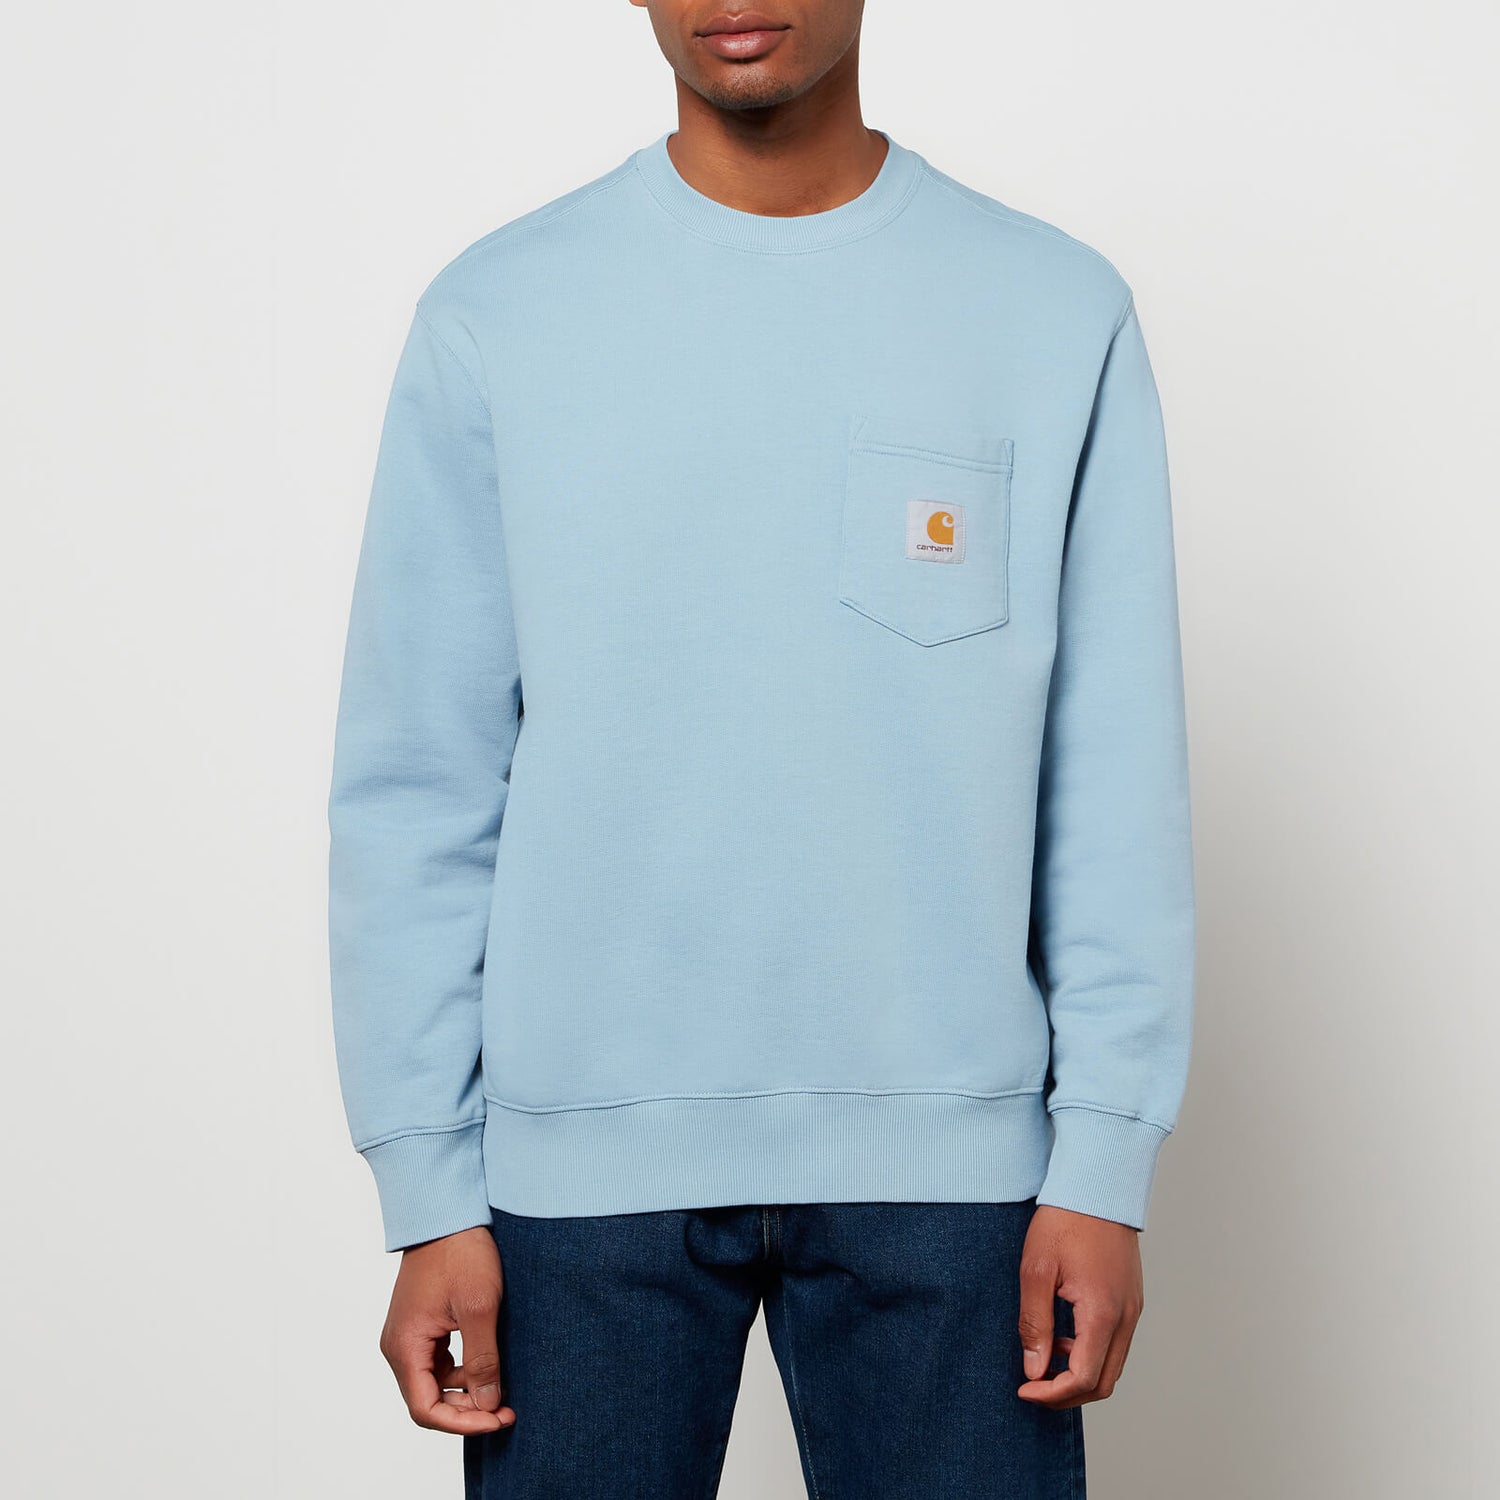 Carhartt WIP Men's Pocket Sweatshirt - Frosted Blue - XL